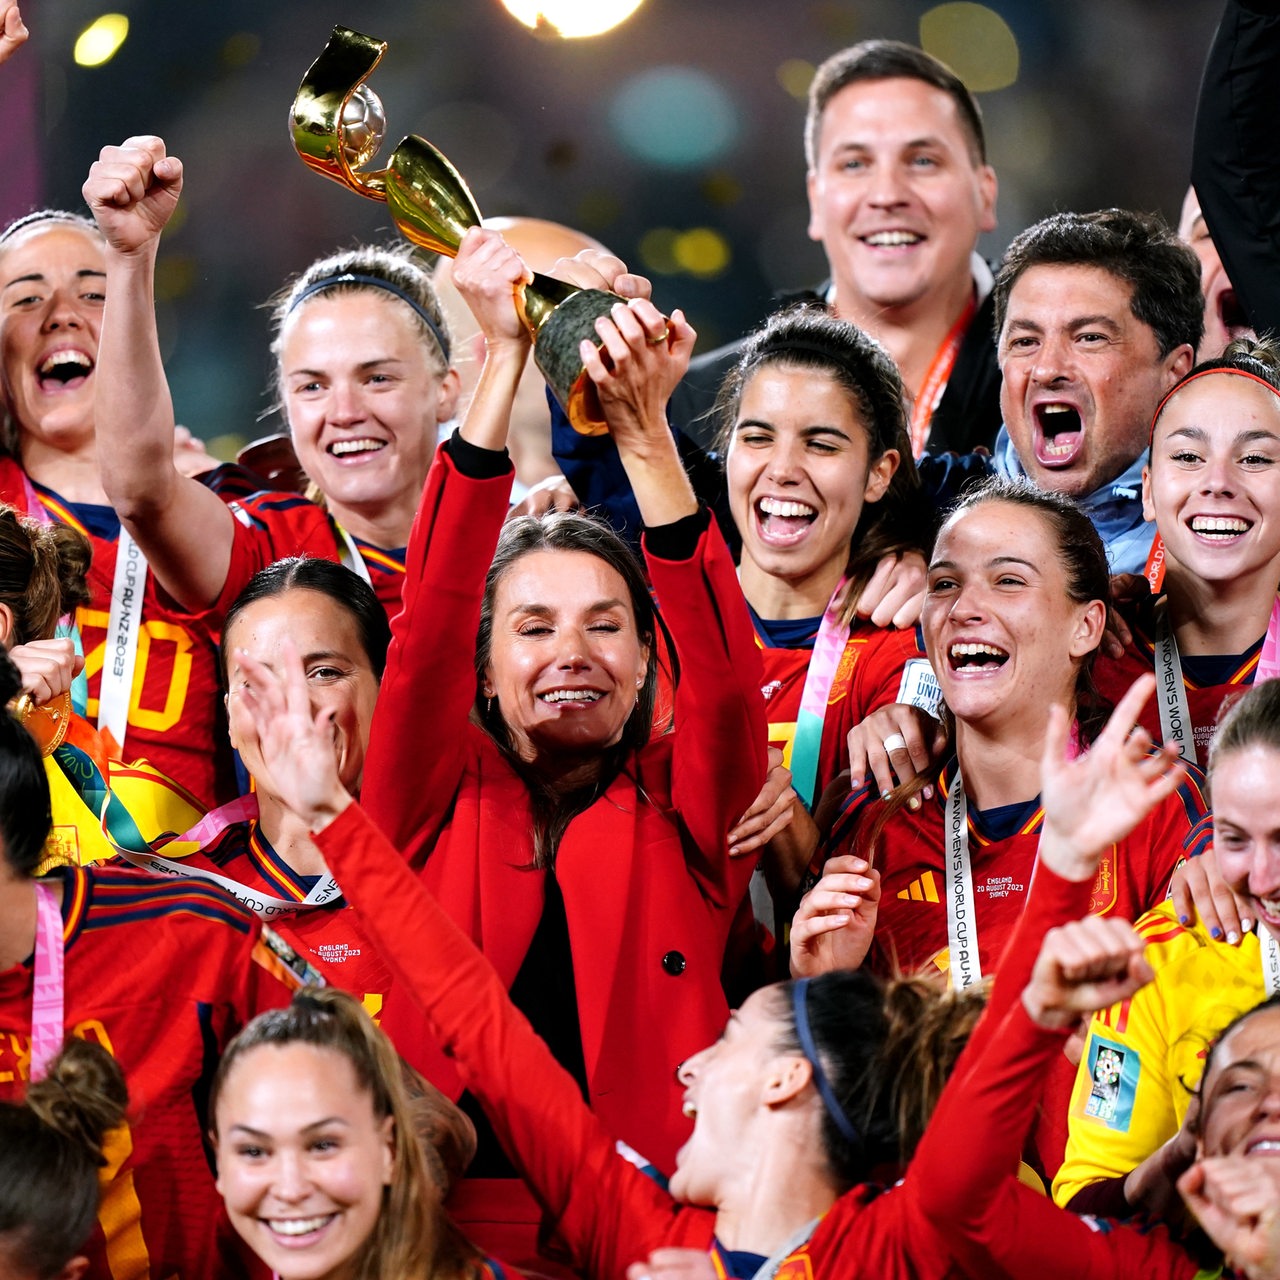 Die spanische Frauenfußballnationelmannschaft feiert den WM-Sieg